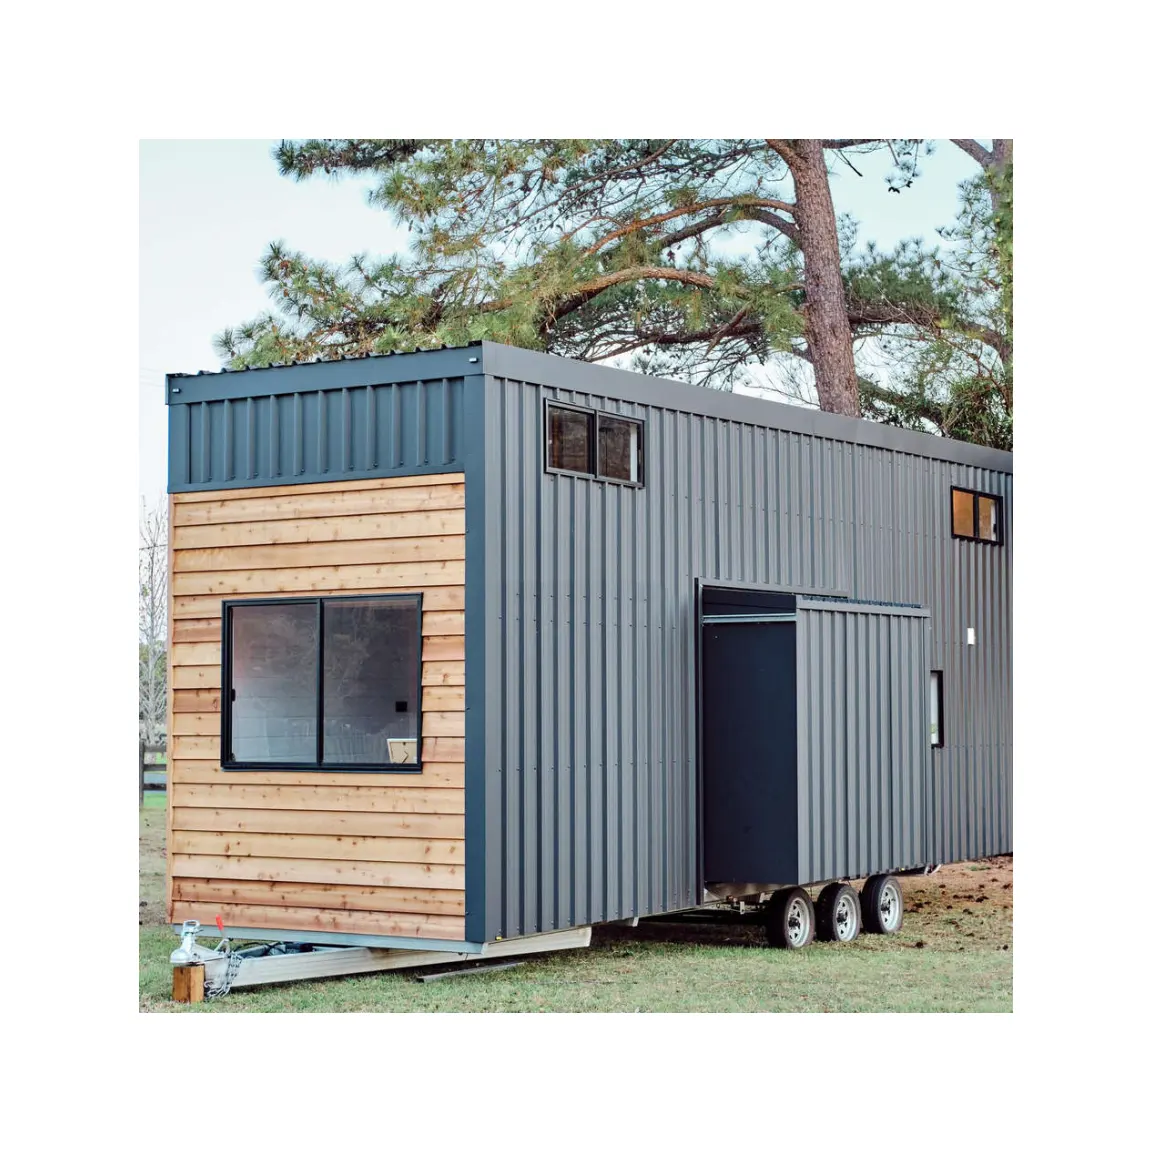 Rumah kecil portabel trailer portabel, kontainer modular paket datar prefab rumah di roda